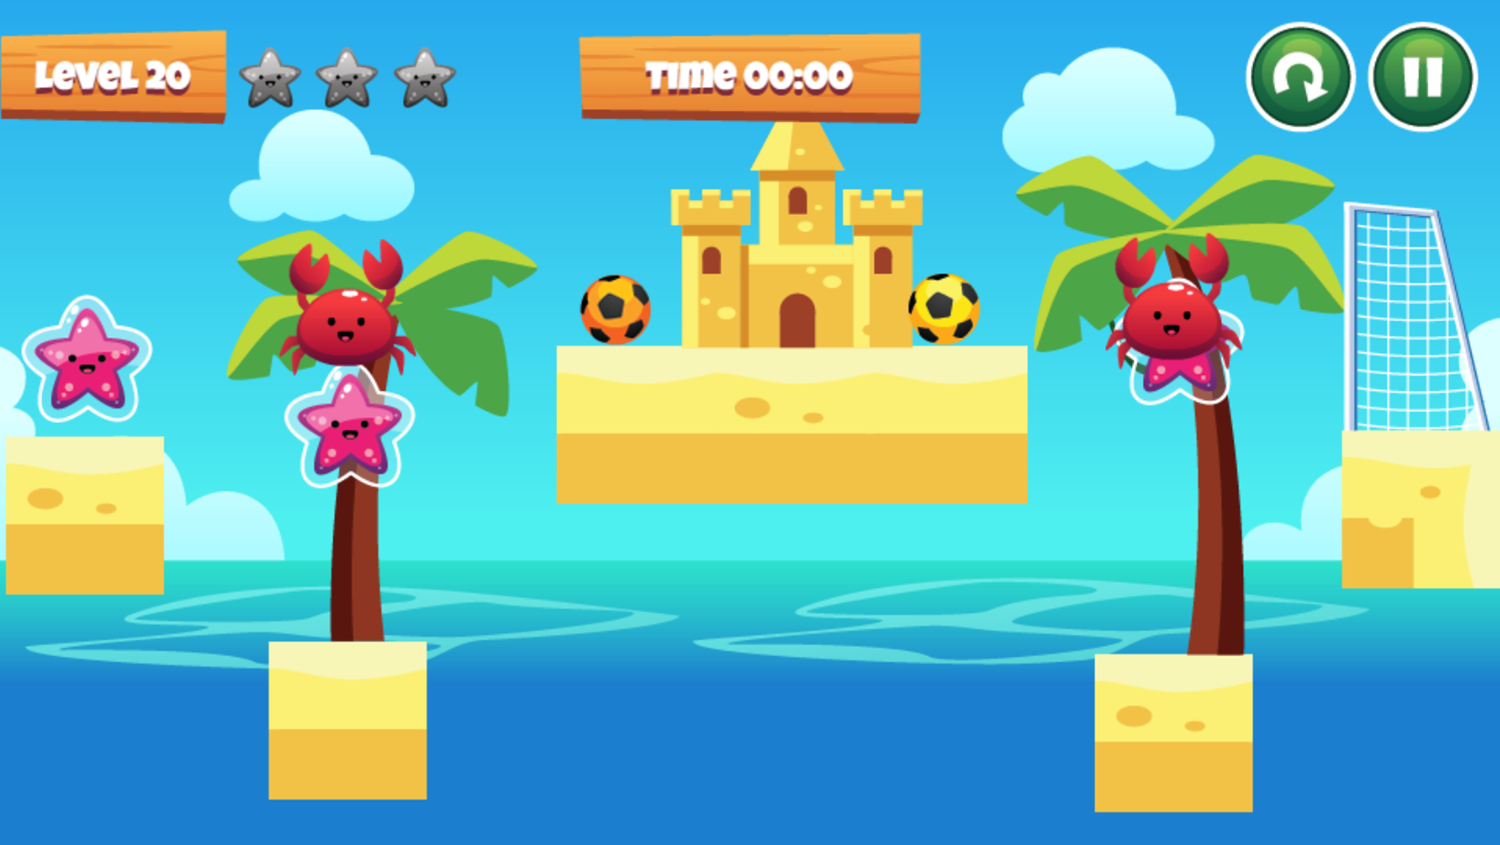 Beach Soccer Game Final Level Screenshot.